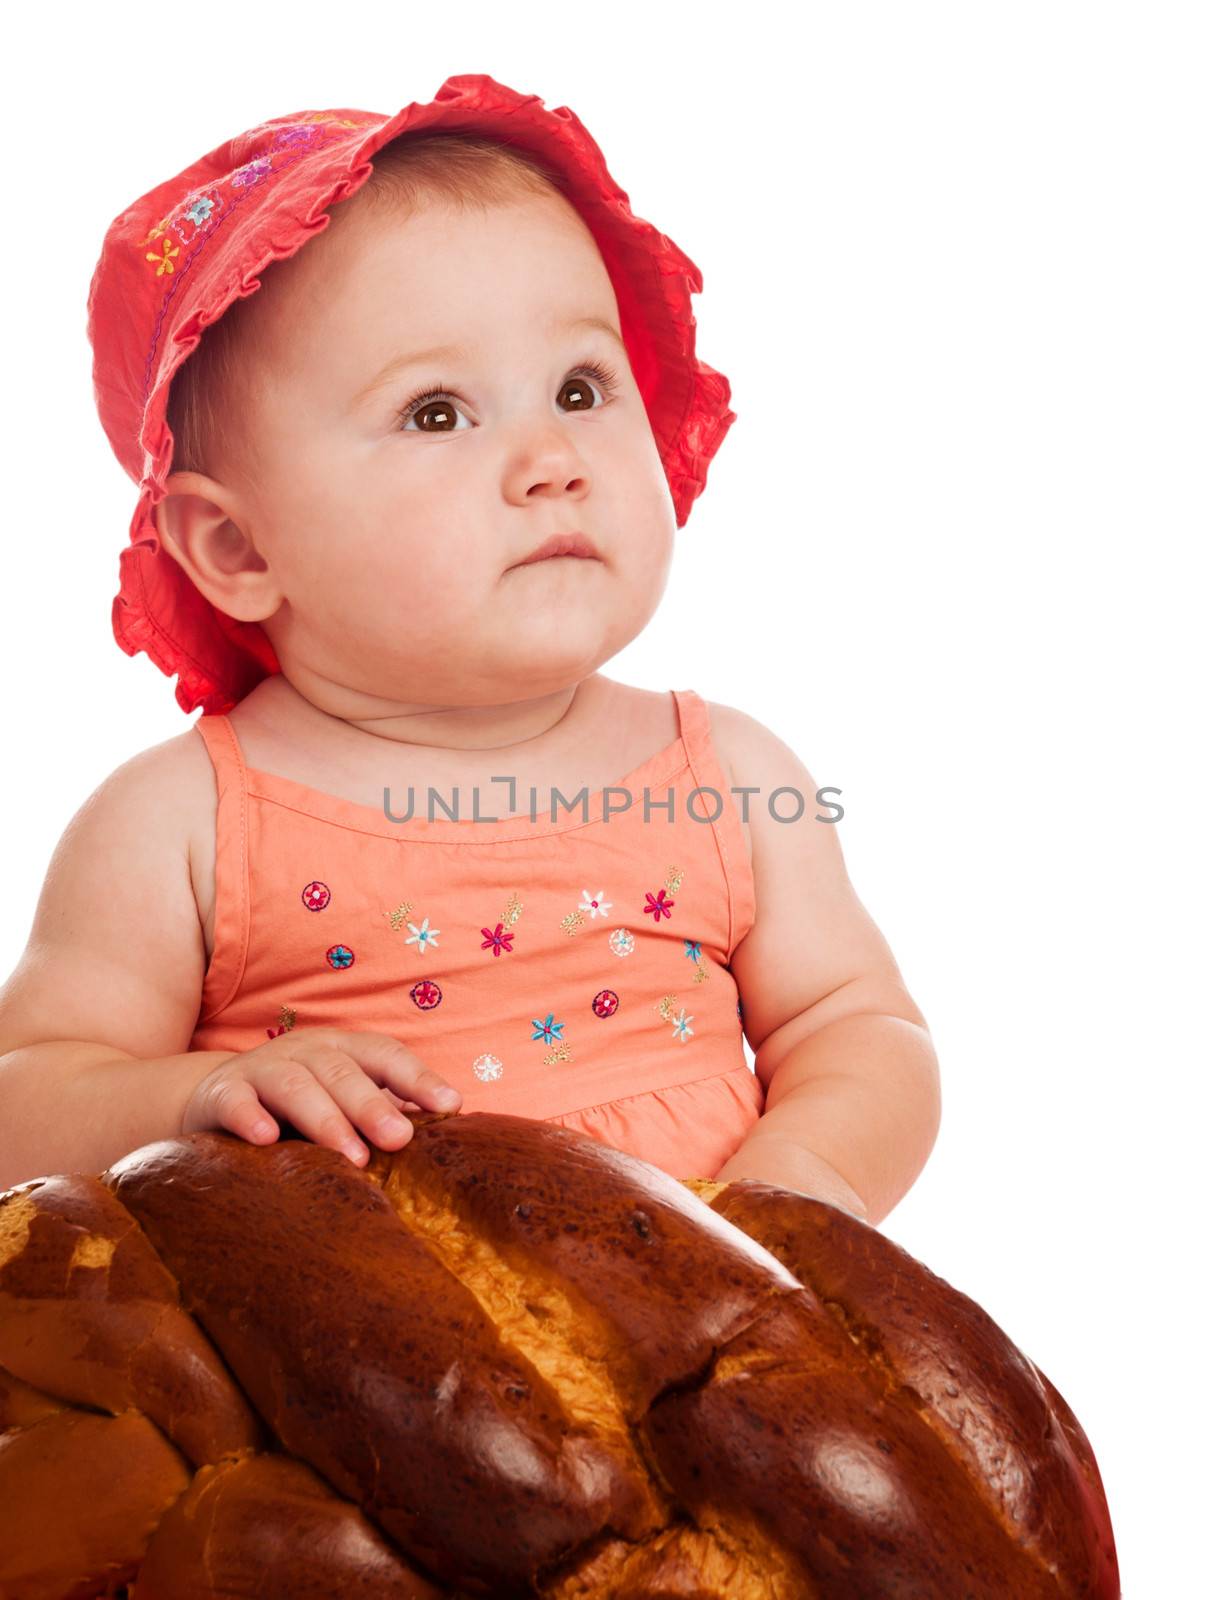 Baby girl and bread by GekaSkr